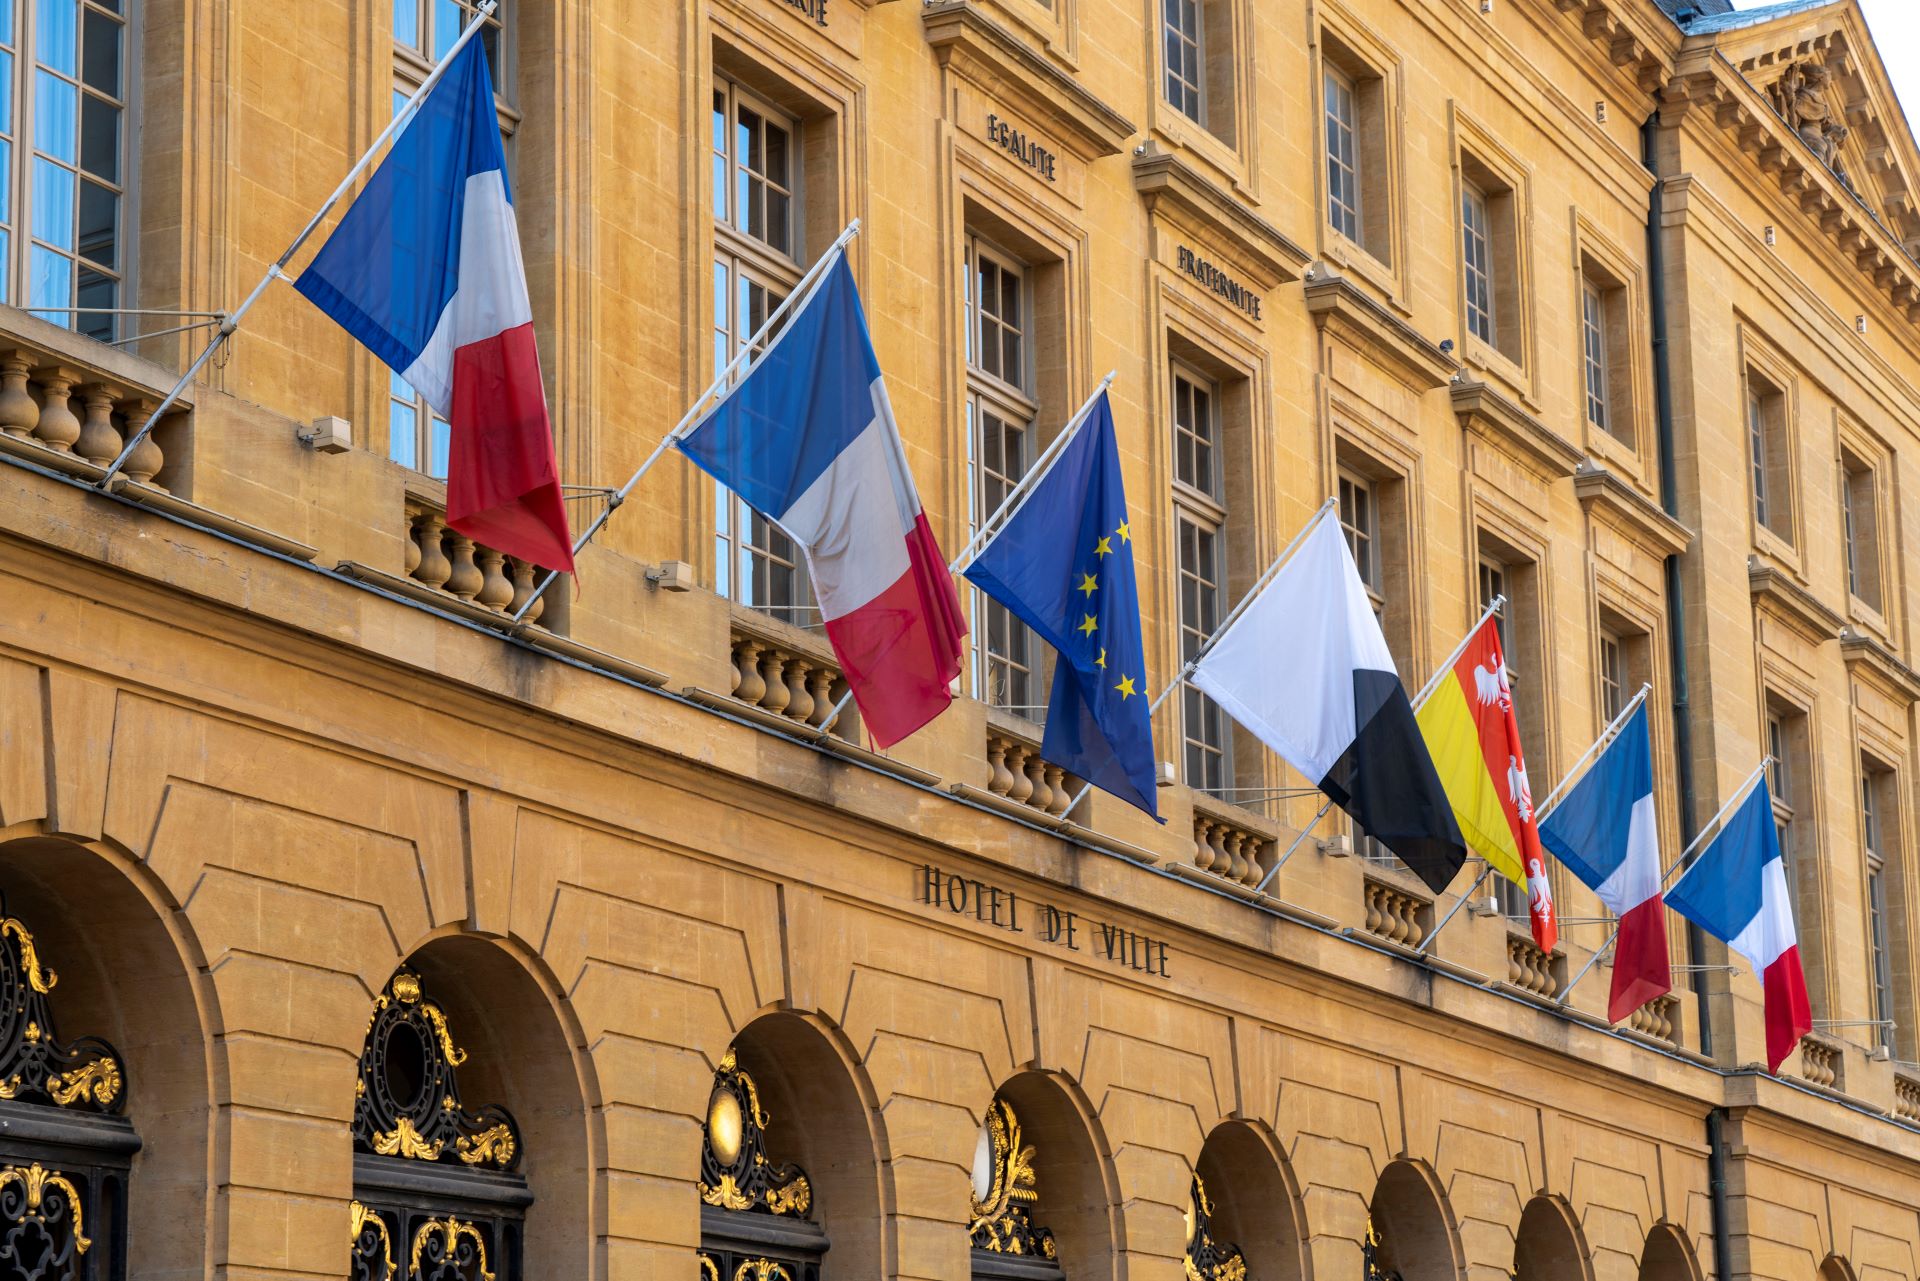 Les drapeaux de la France, de l'UE et de diverses provinces sont accrochés sur le côté jaune de l'Hôtel de Ville.